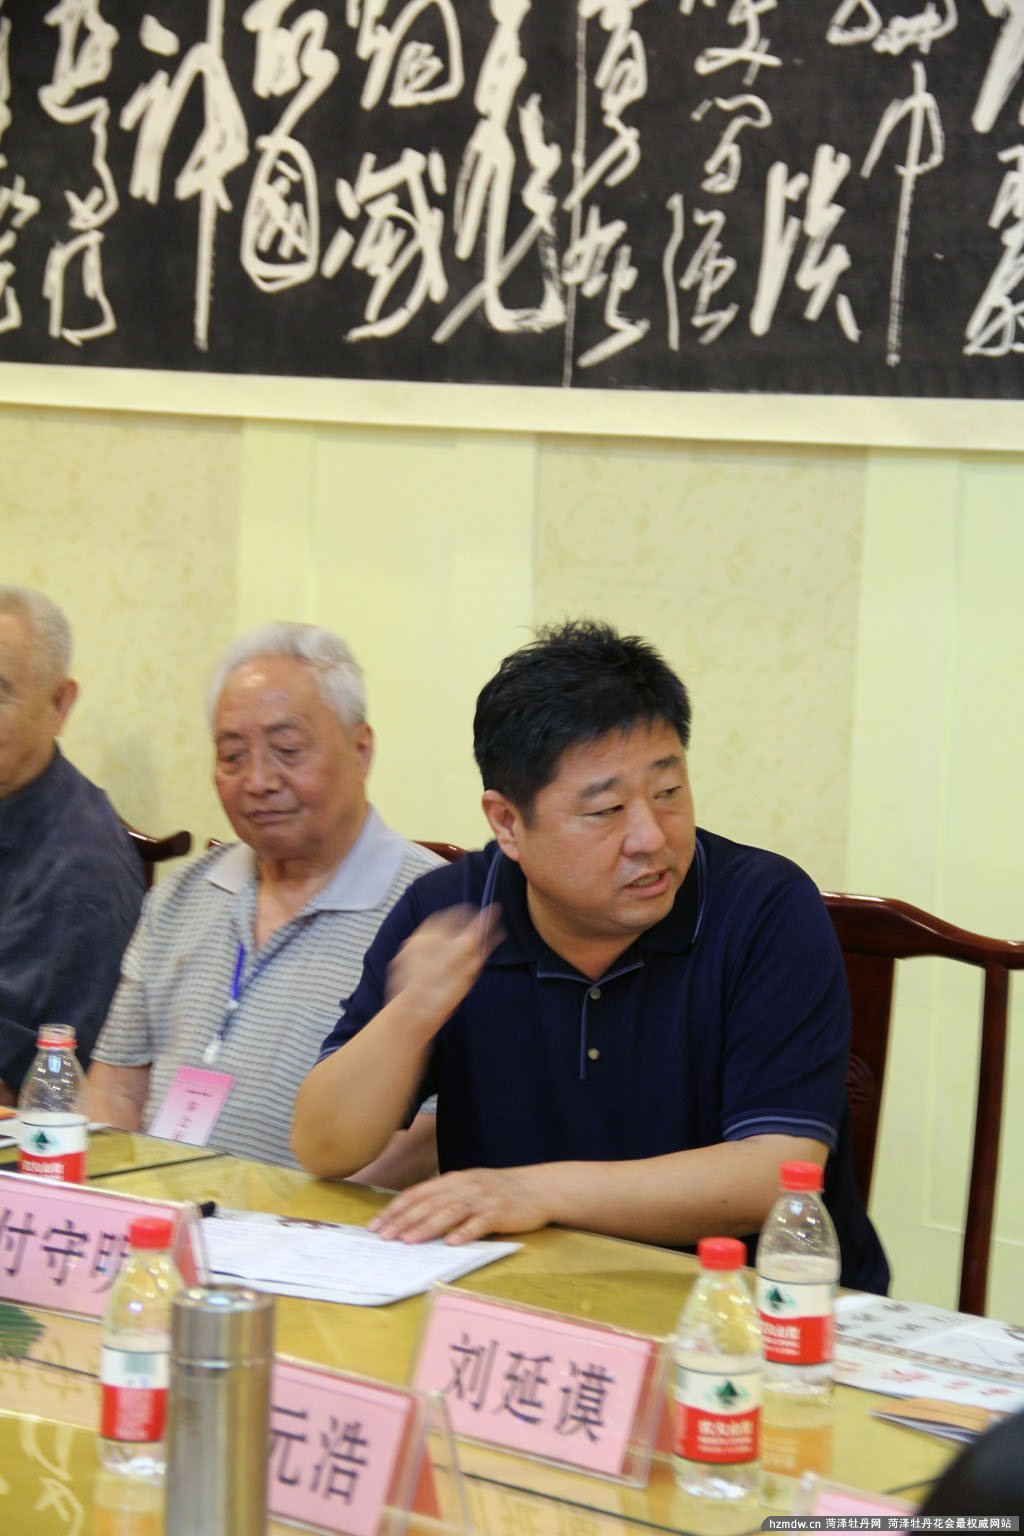 菏泽市政协党组副书记、副主席付守明针对这次研讨会做出精彩点评